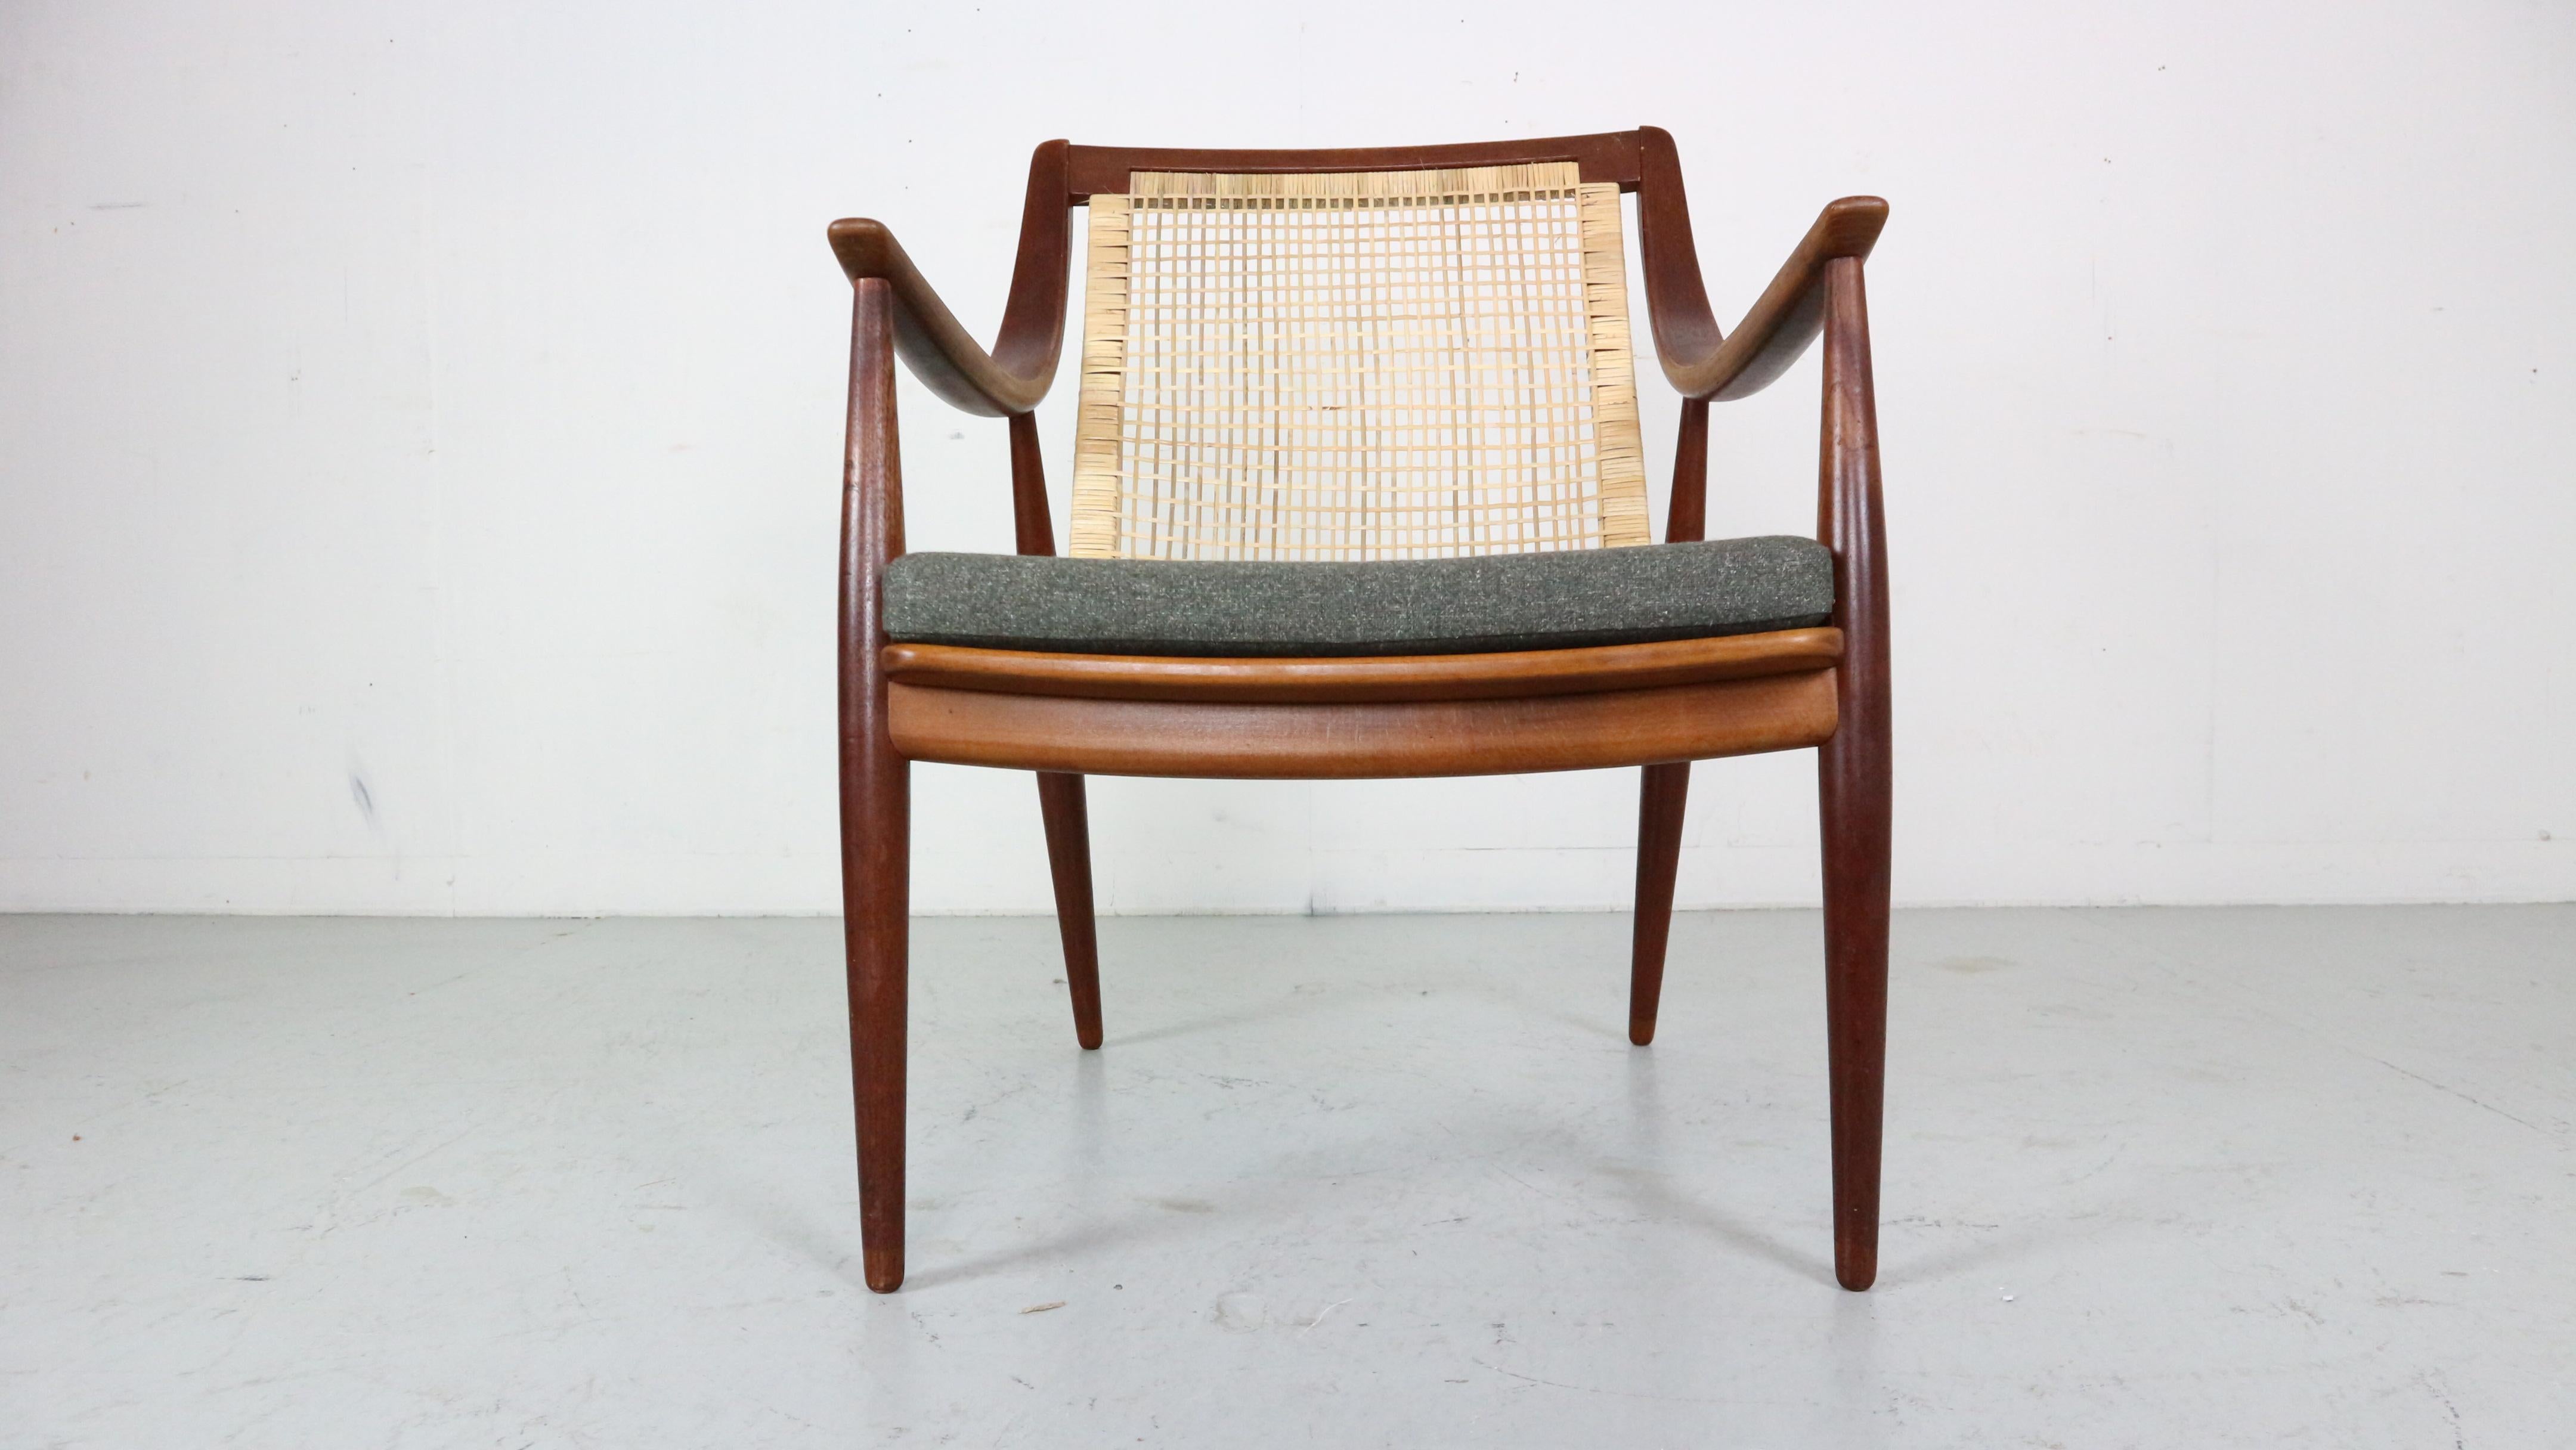 Ein klassisches Design von einem der größten dänischen Möbeldesignerpaare der Geschichte - Hvidt & Mølgaard, hergestellt von France & Daverkosen im Dänemark der 1960er Jahre.
Modellnummer - 146, der Stuhl hat ein Original Label.

Dieser bequeme